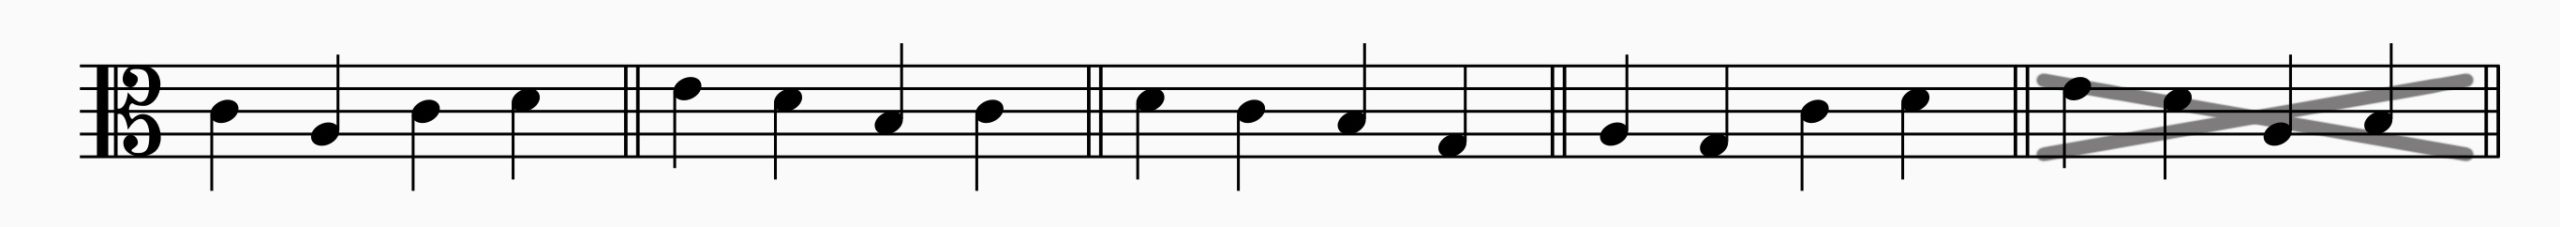 Gebräuche Intervallsprünge in der 3. Art. Die Quarte abwärts kommt im Palestrina-Stil praktisch nicht vor.